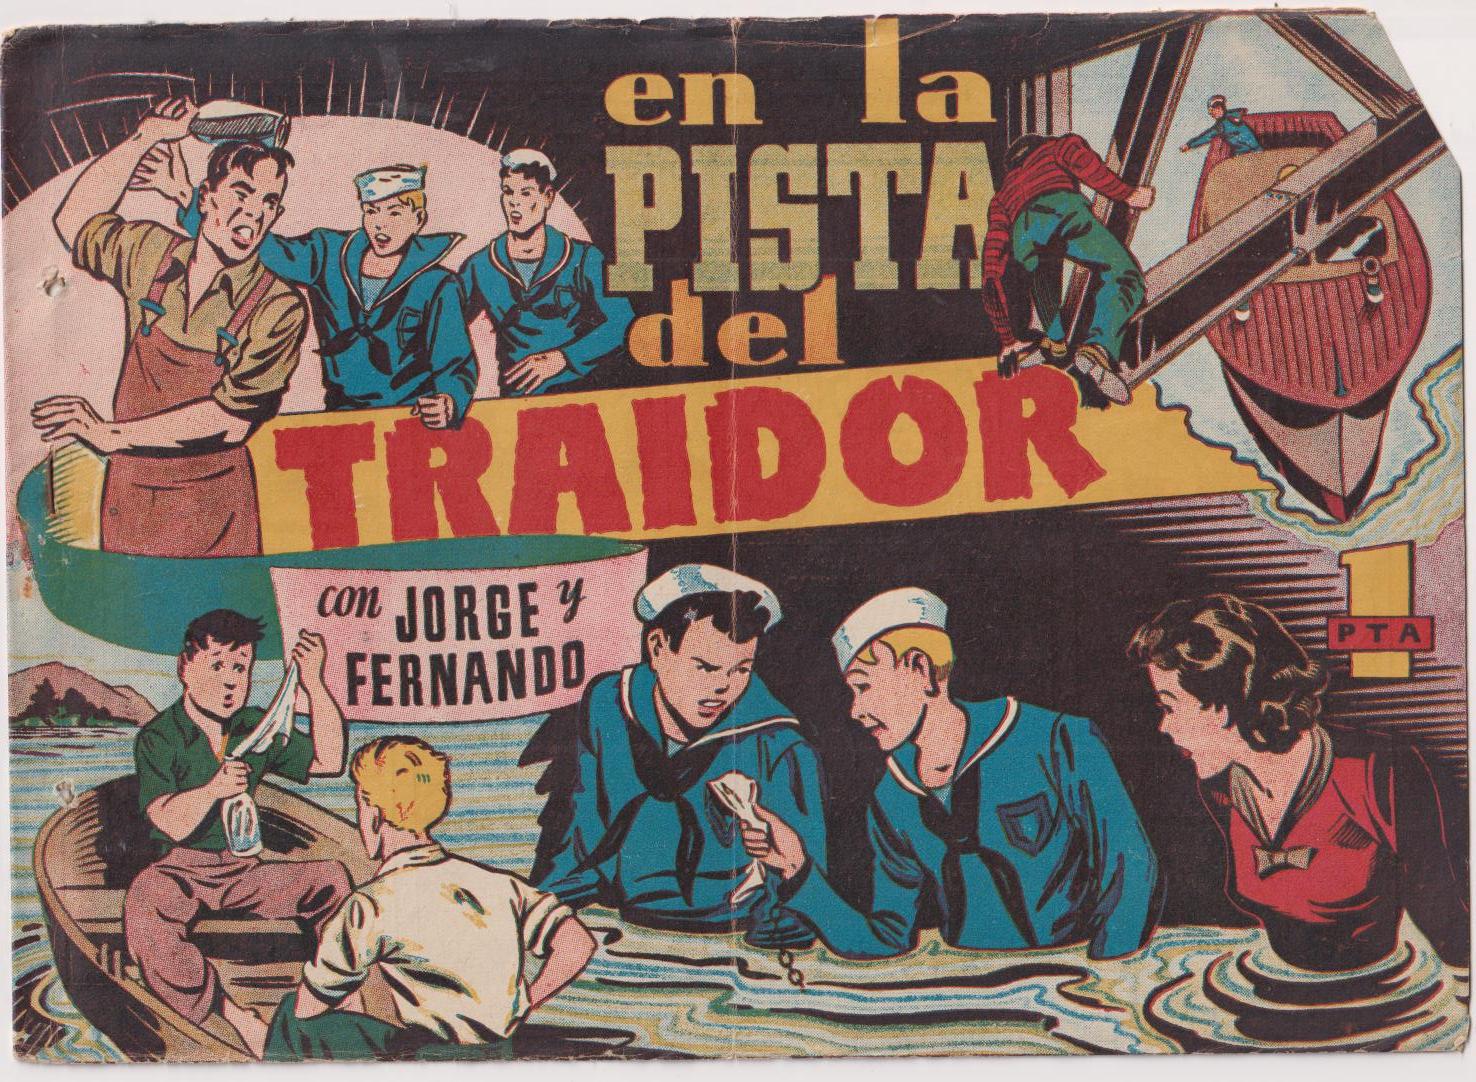 Jorge y Fernando en la pista del traidor. Hispano Americana 1940